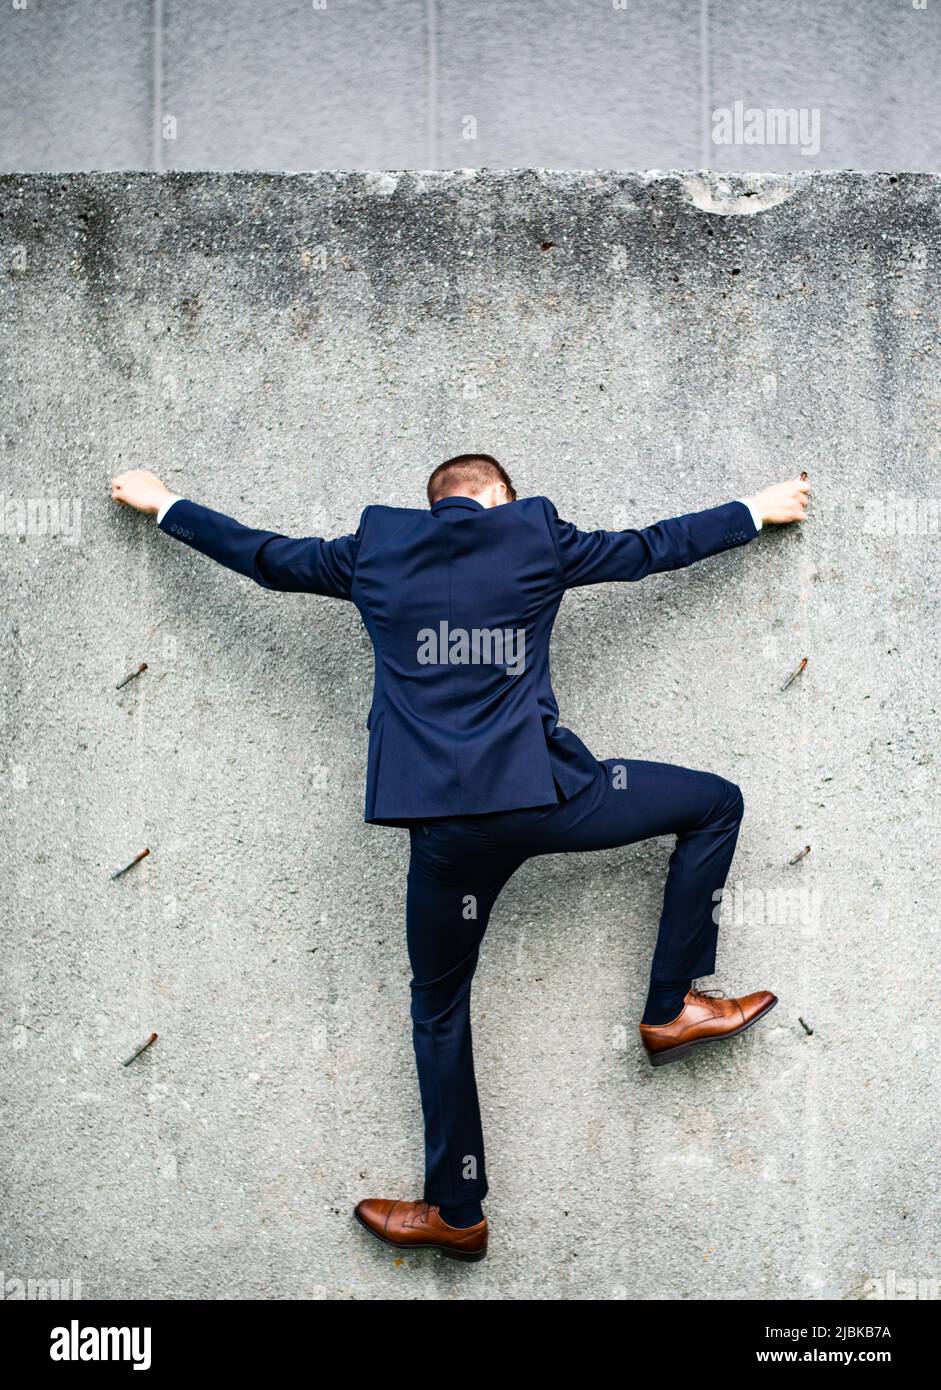 Ein verkleideter junger Mann, der eine Betonwand klettert und nur einen freiliegenden Stahl in der Hand hält. Stockfoto